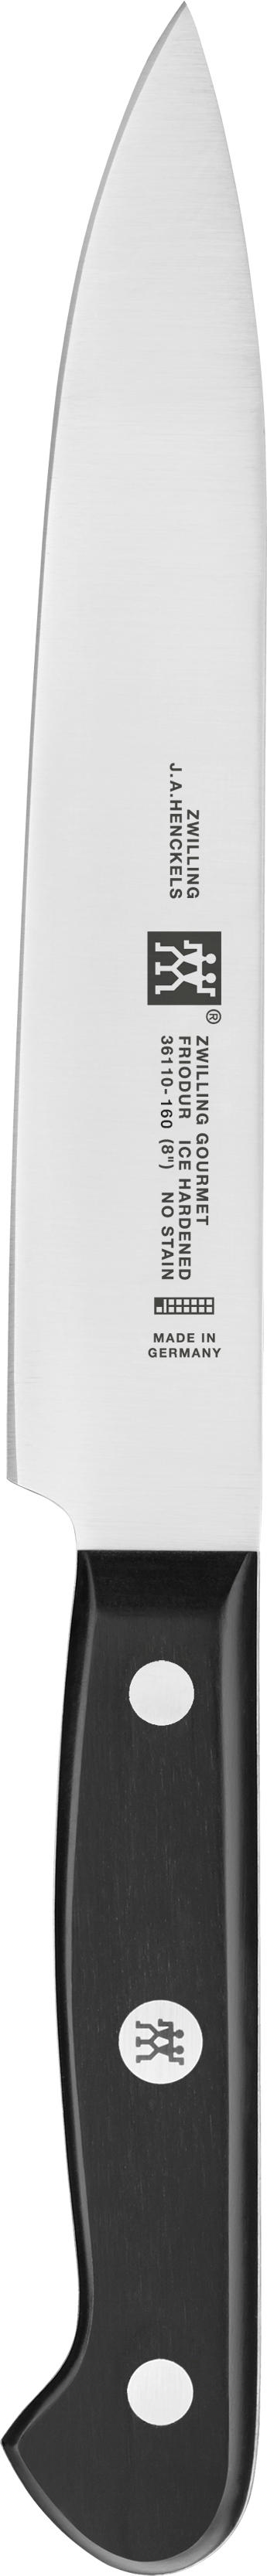 FLEISCHMESSER  16 cm  - Silberfarben/Schwarz, Basics, Kunststoff/Metall - Zwilling